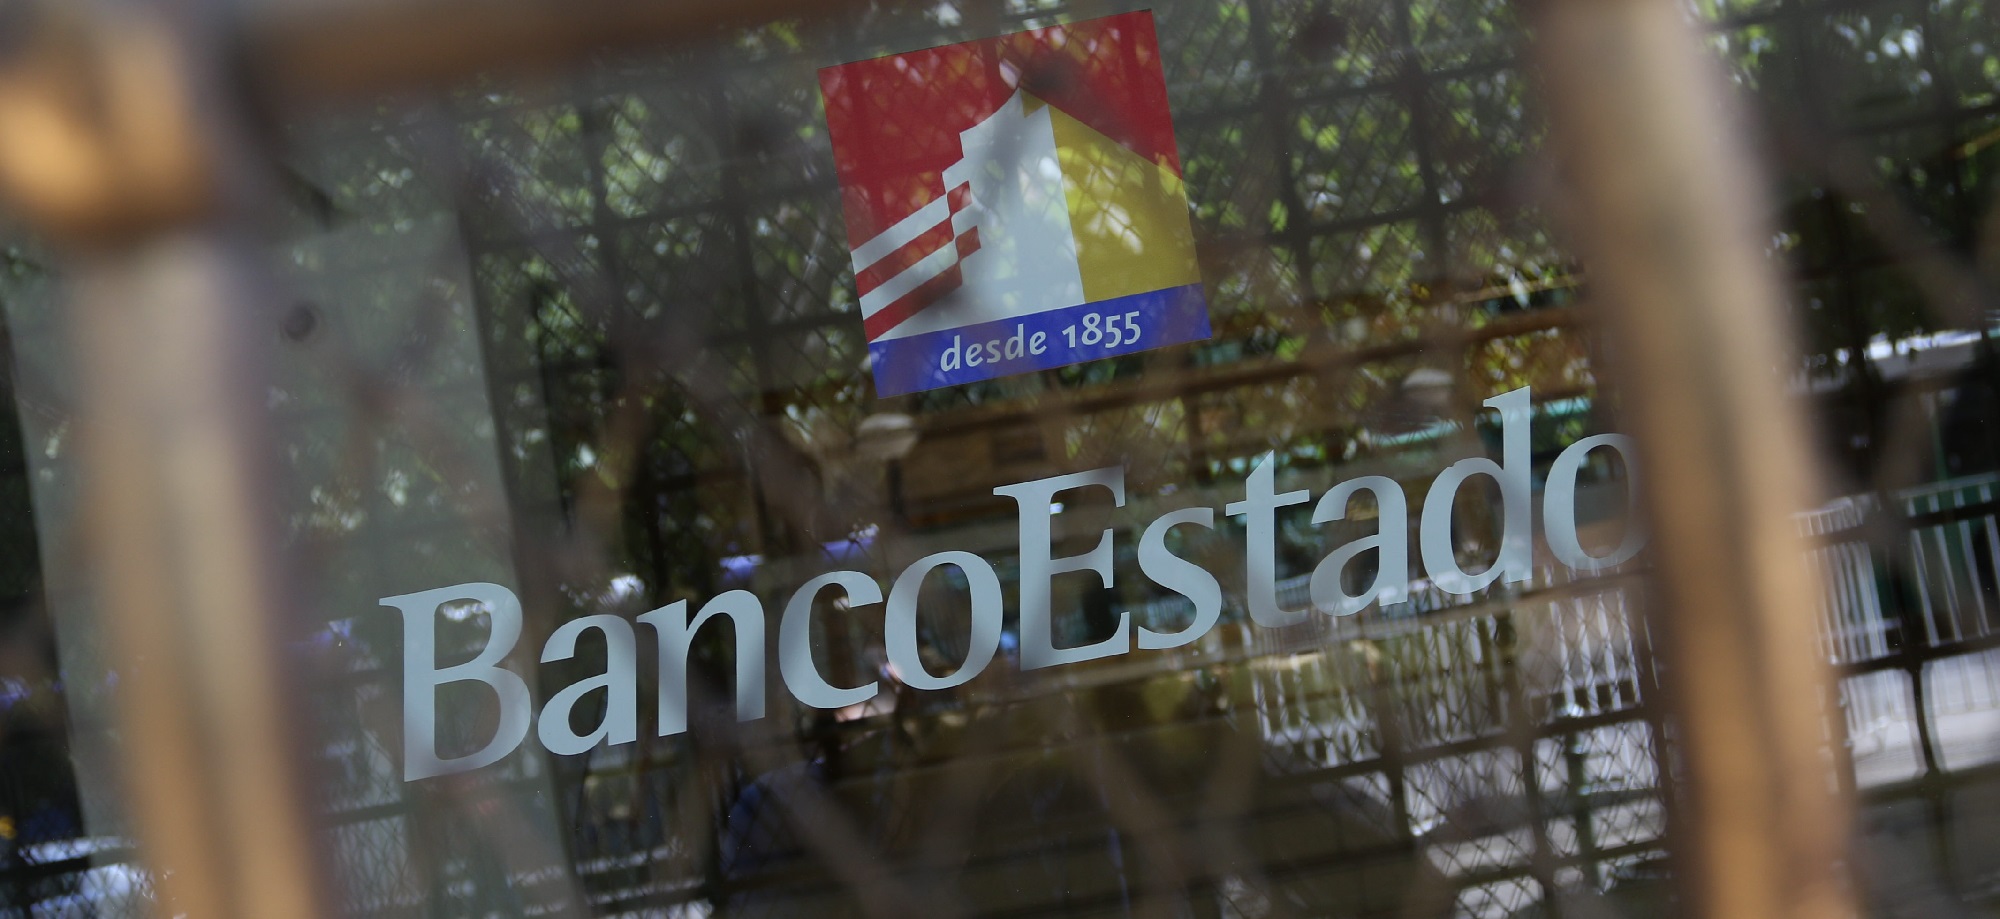 BancoEstado lanzó “Hipotecazo” y ofrece tasas de interés históricas desde 1,99%